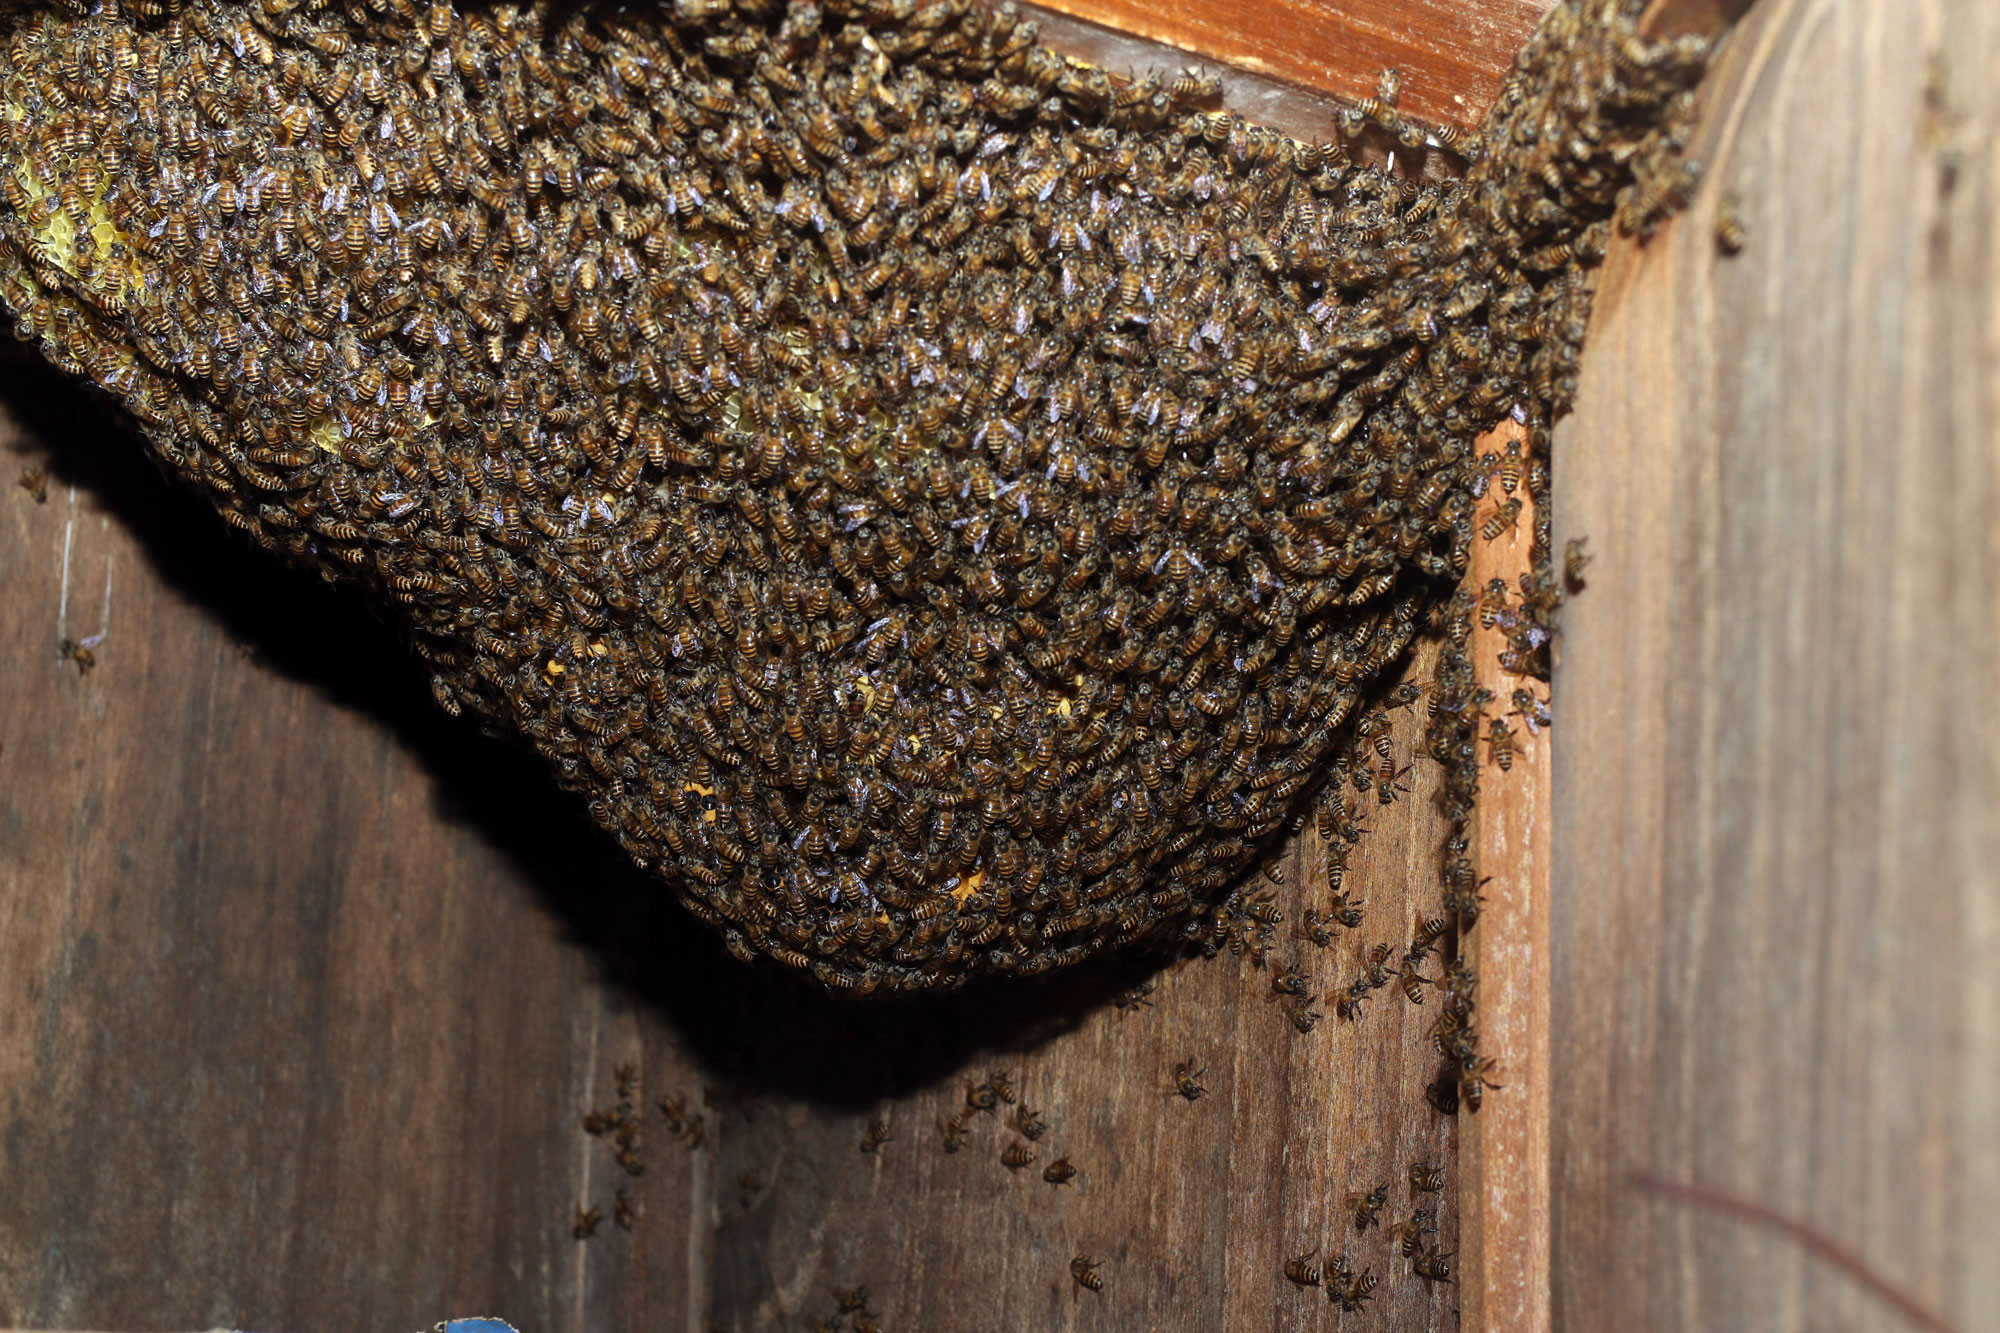 Tổ ong rừng đầy mật trong tủ.